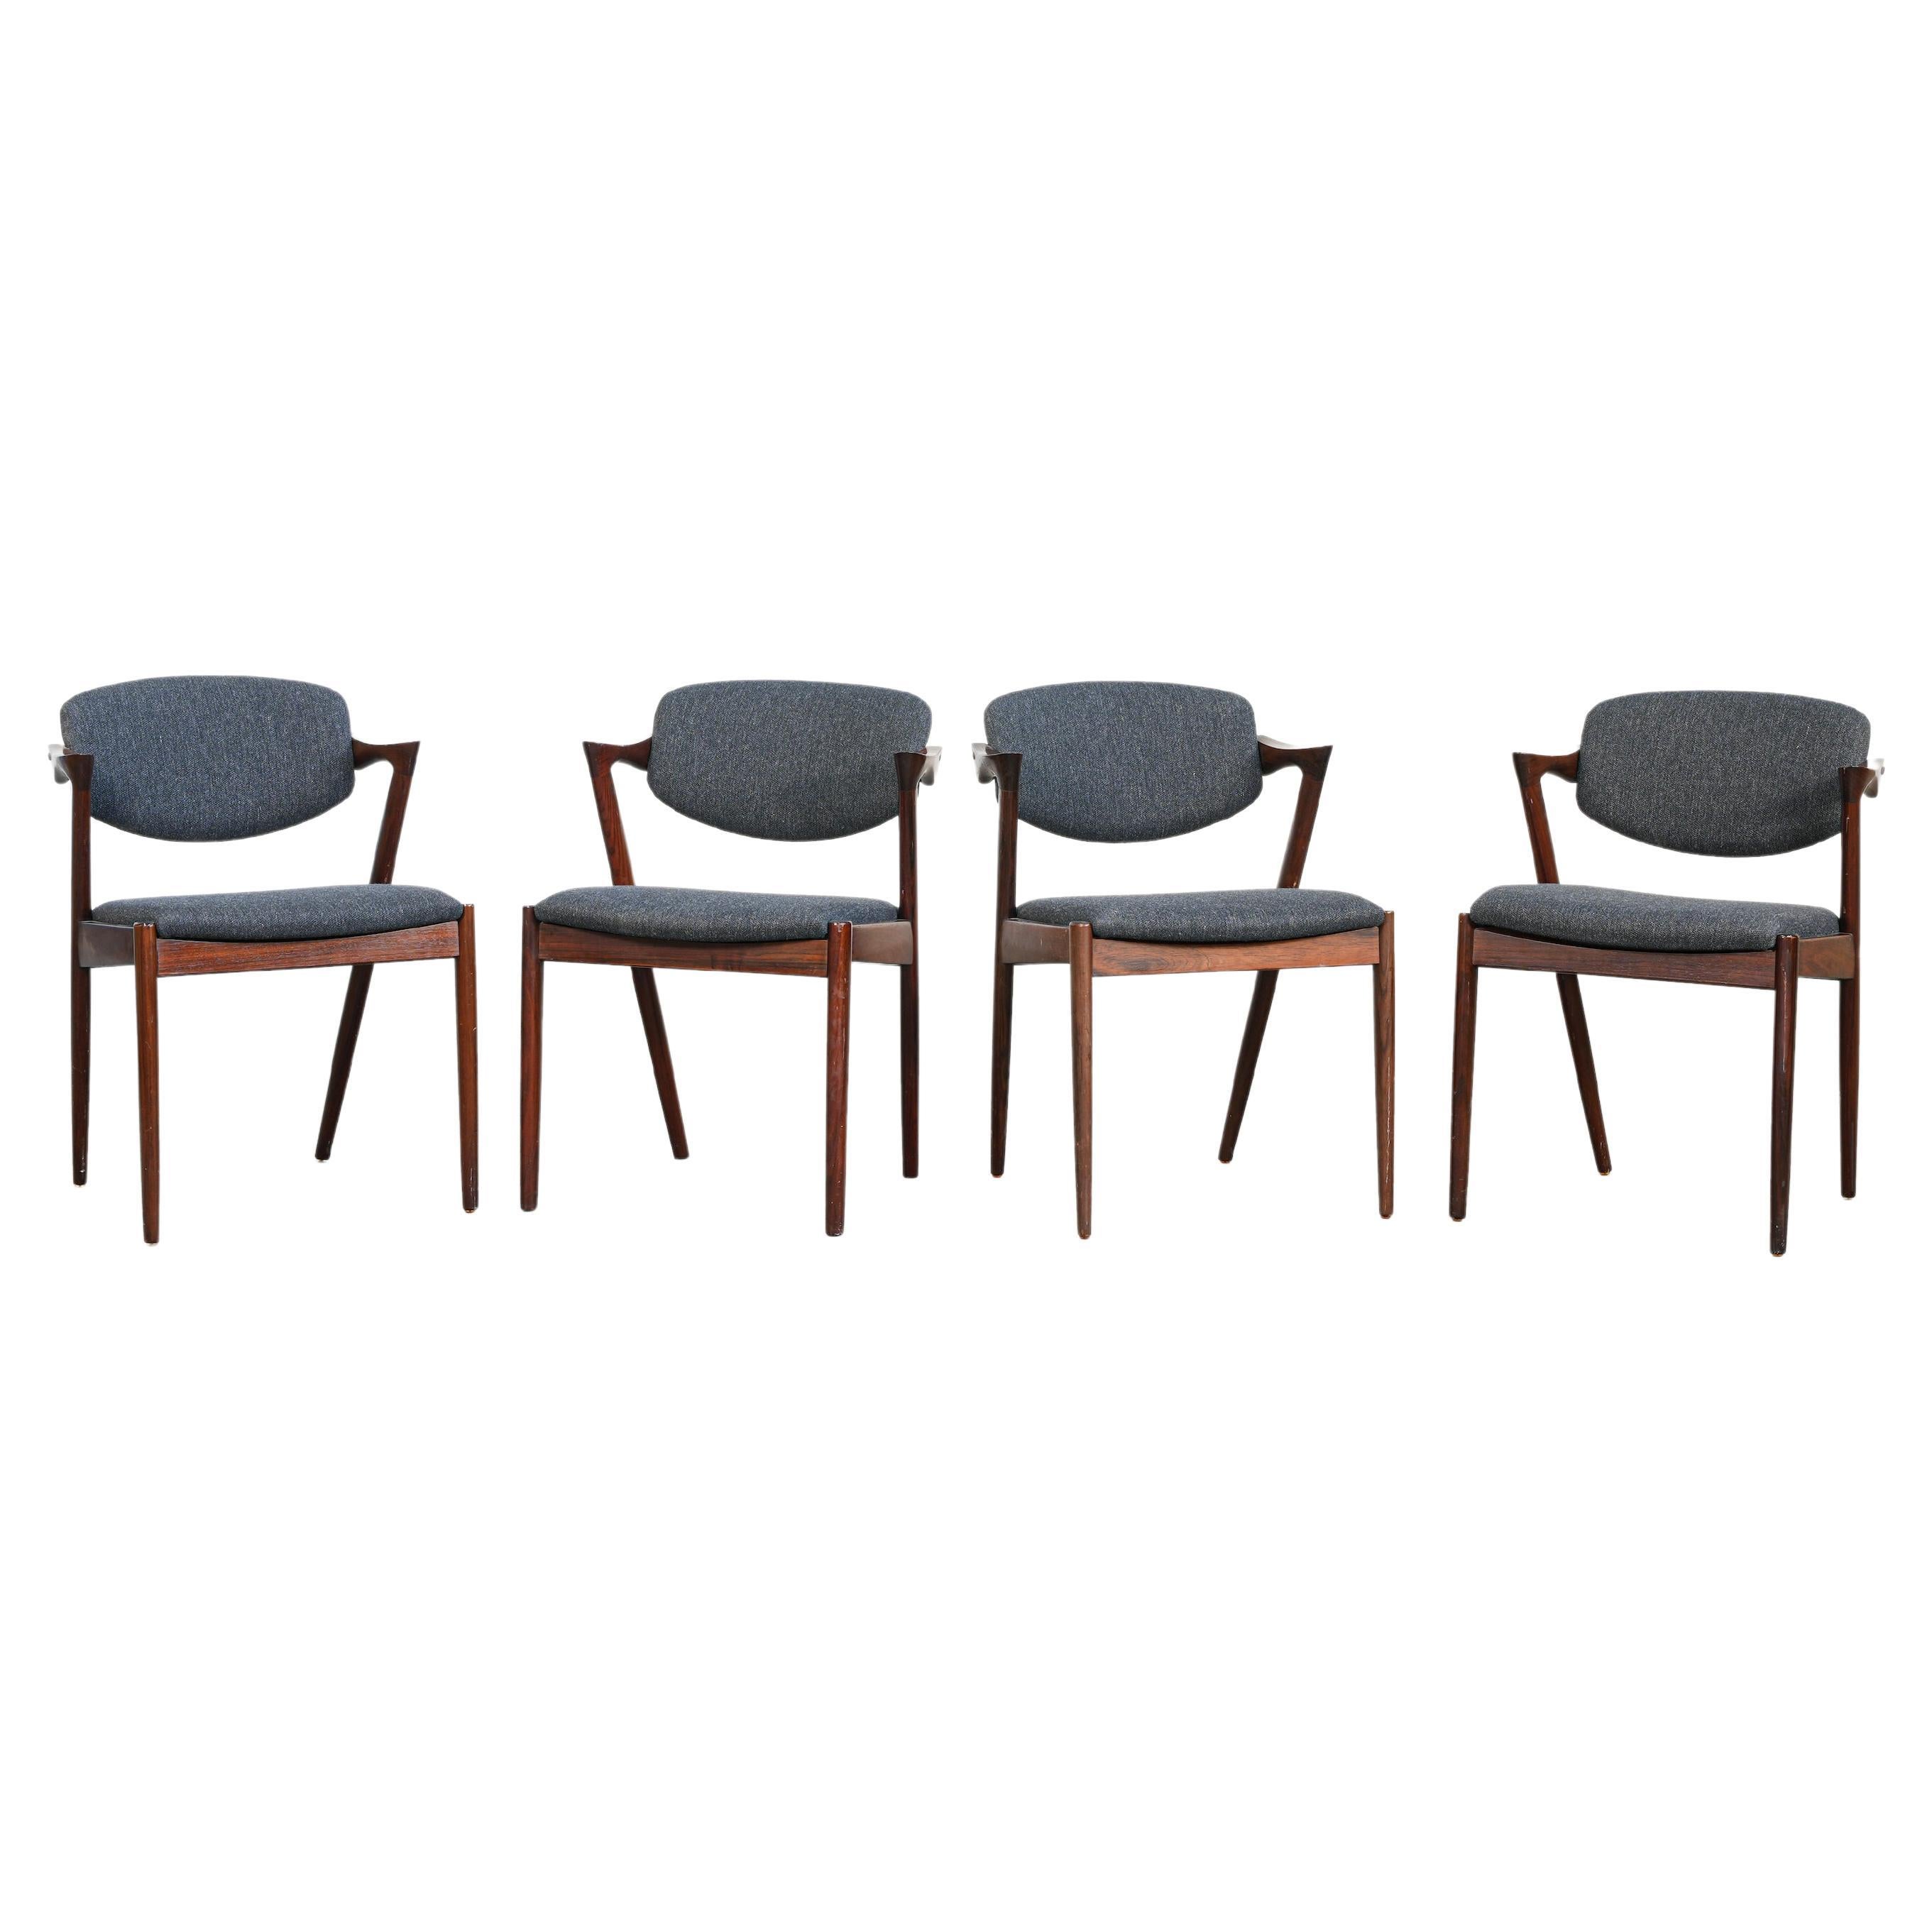 Ensemble de quatre fauteuils de salle à manger Kai Kristiansen, tapisserie S. Andersen neuve